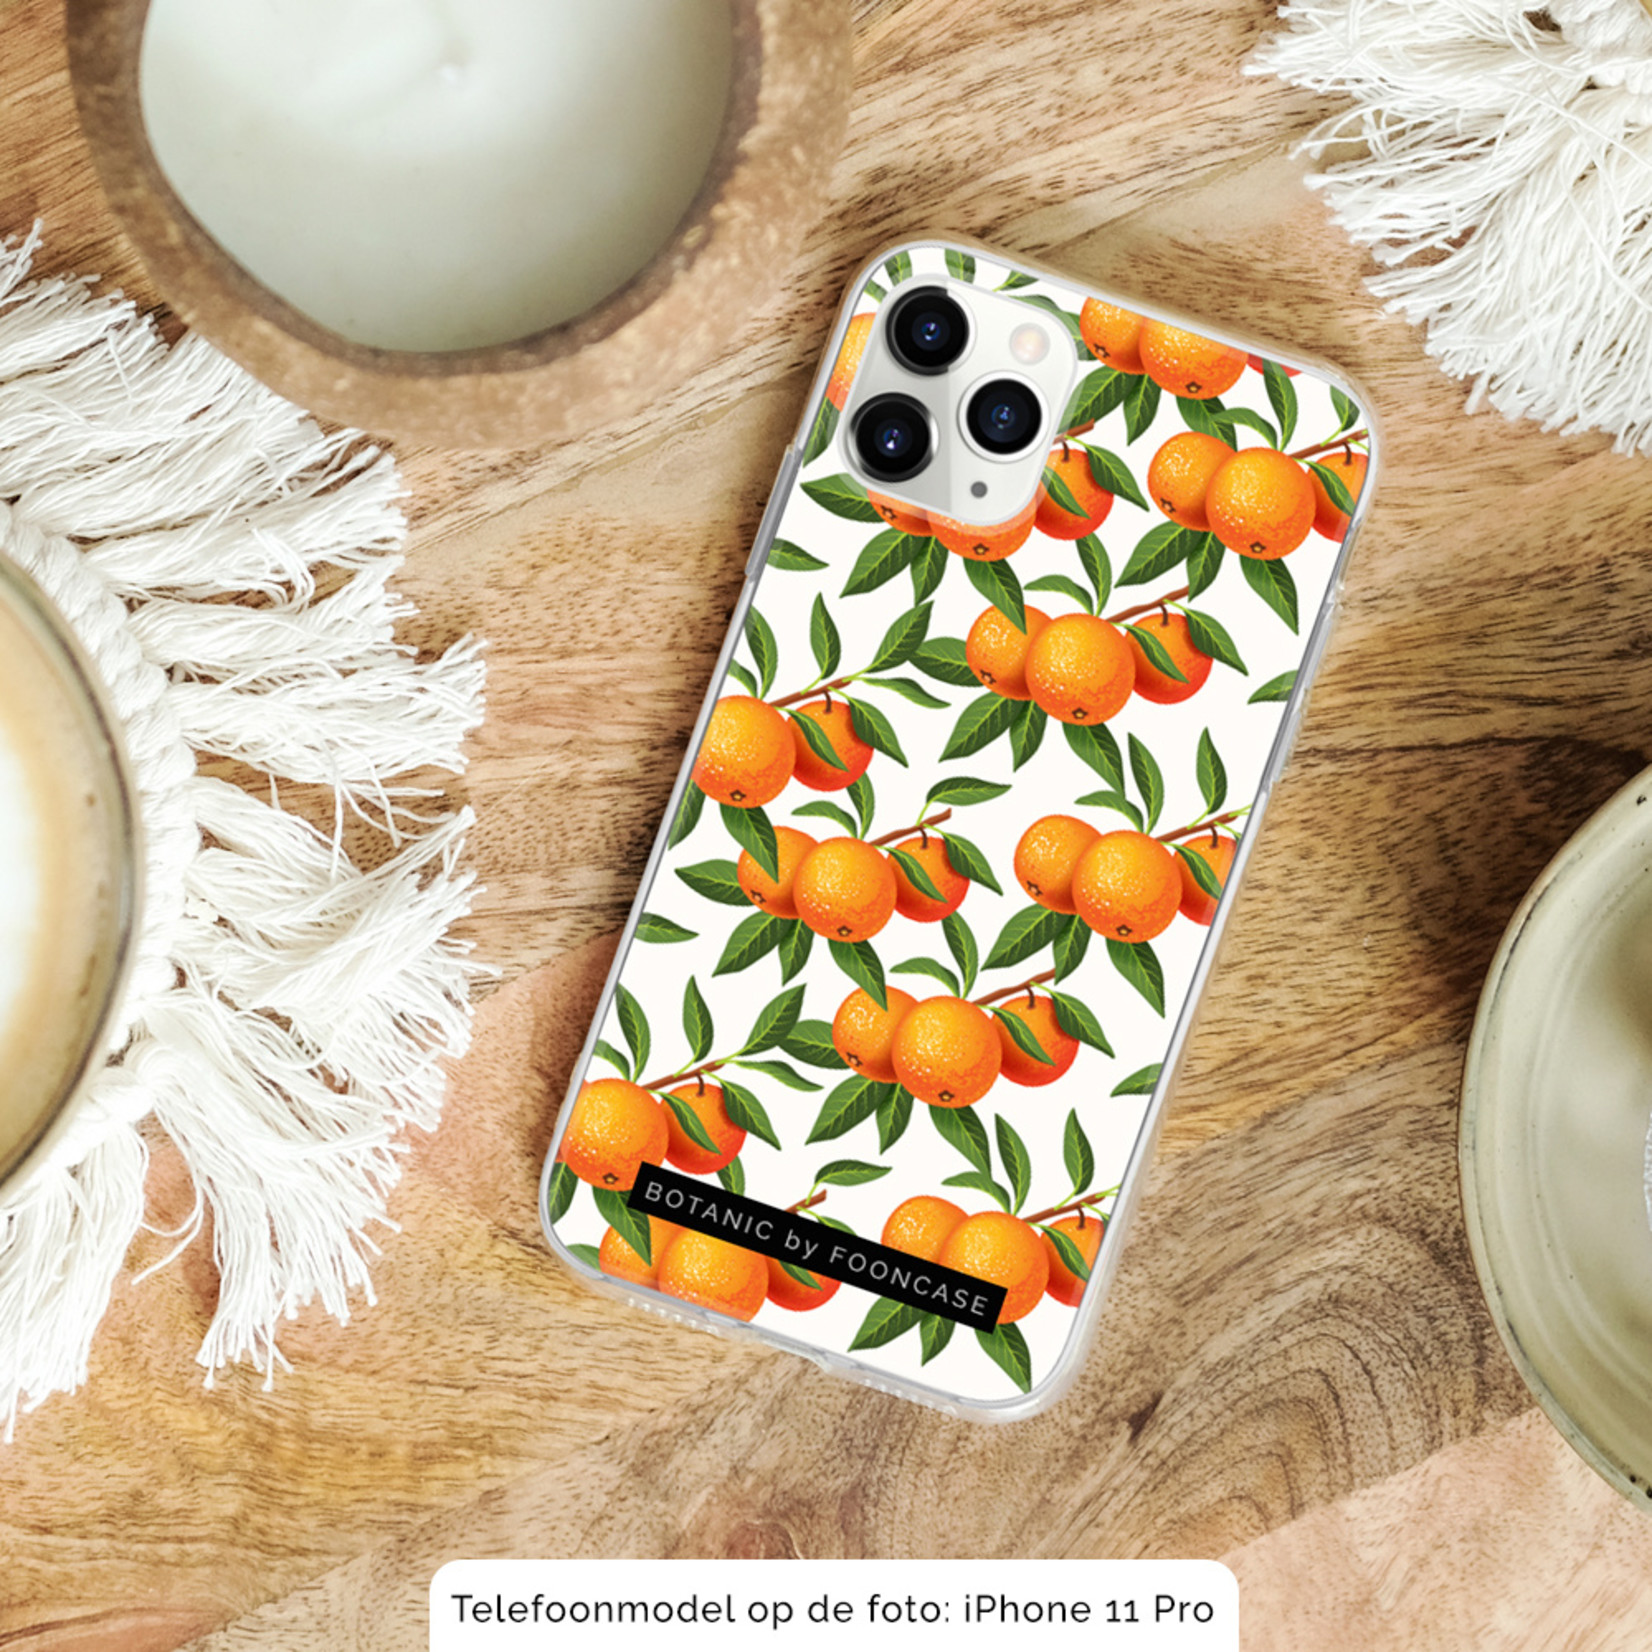 FOONCASE Iphone 8 Cover - Botanic Manderin